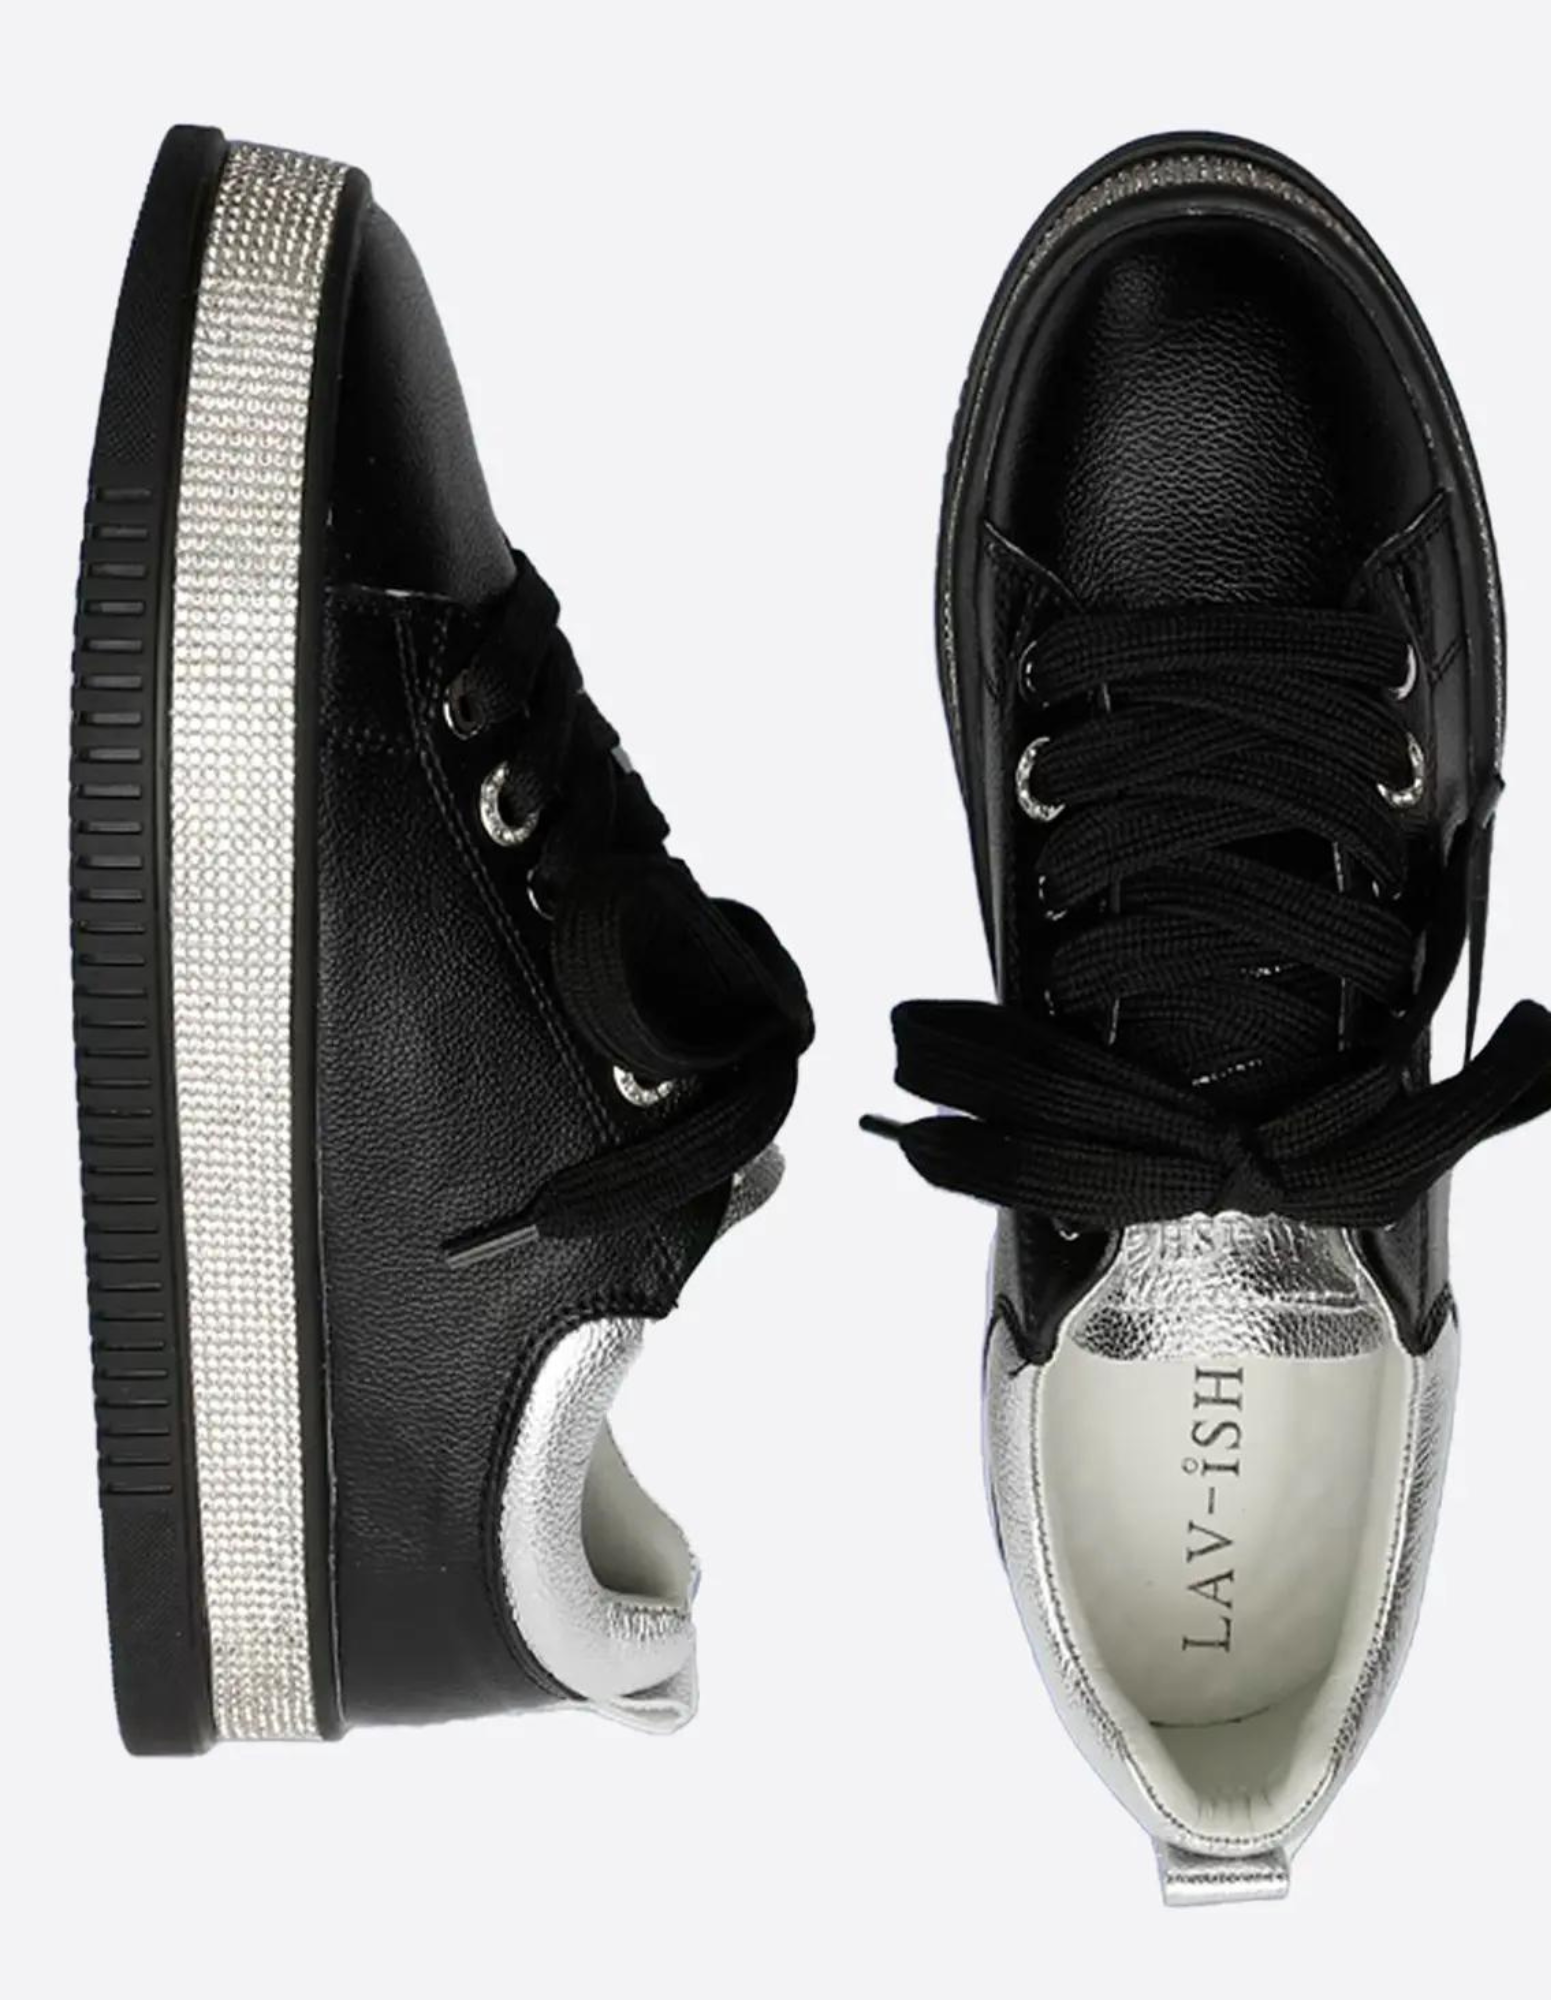 LAV-ISH Luxe Bling Sneaker - Black